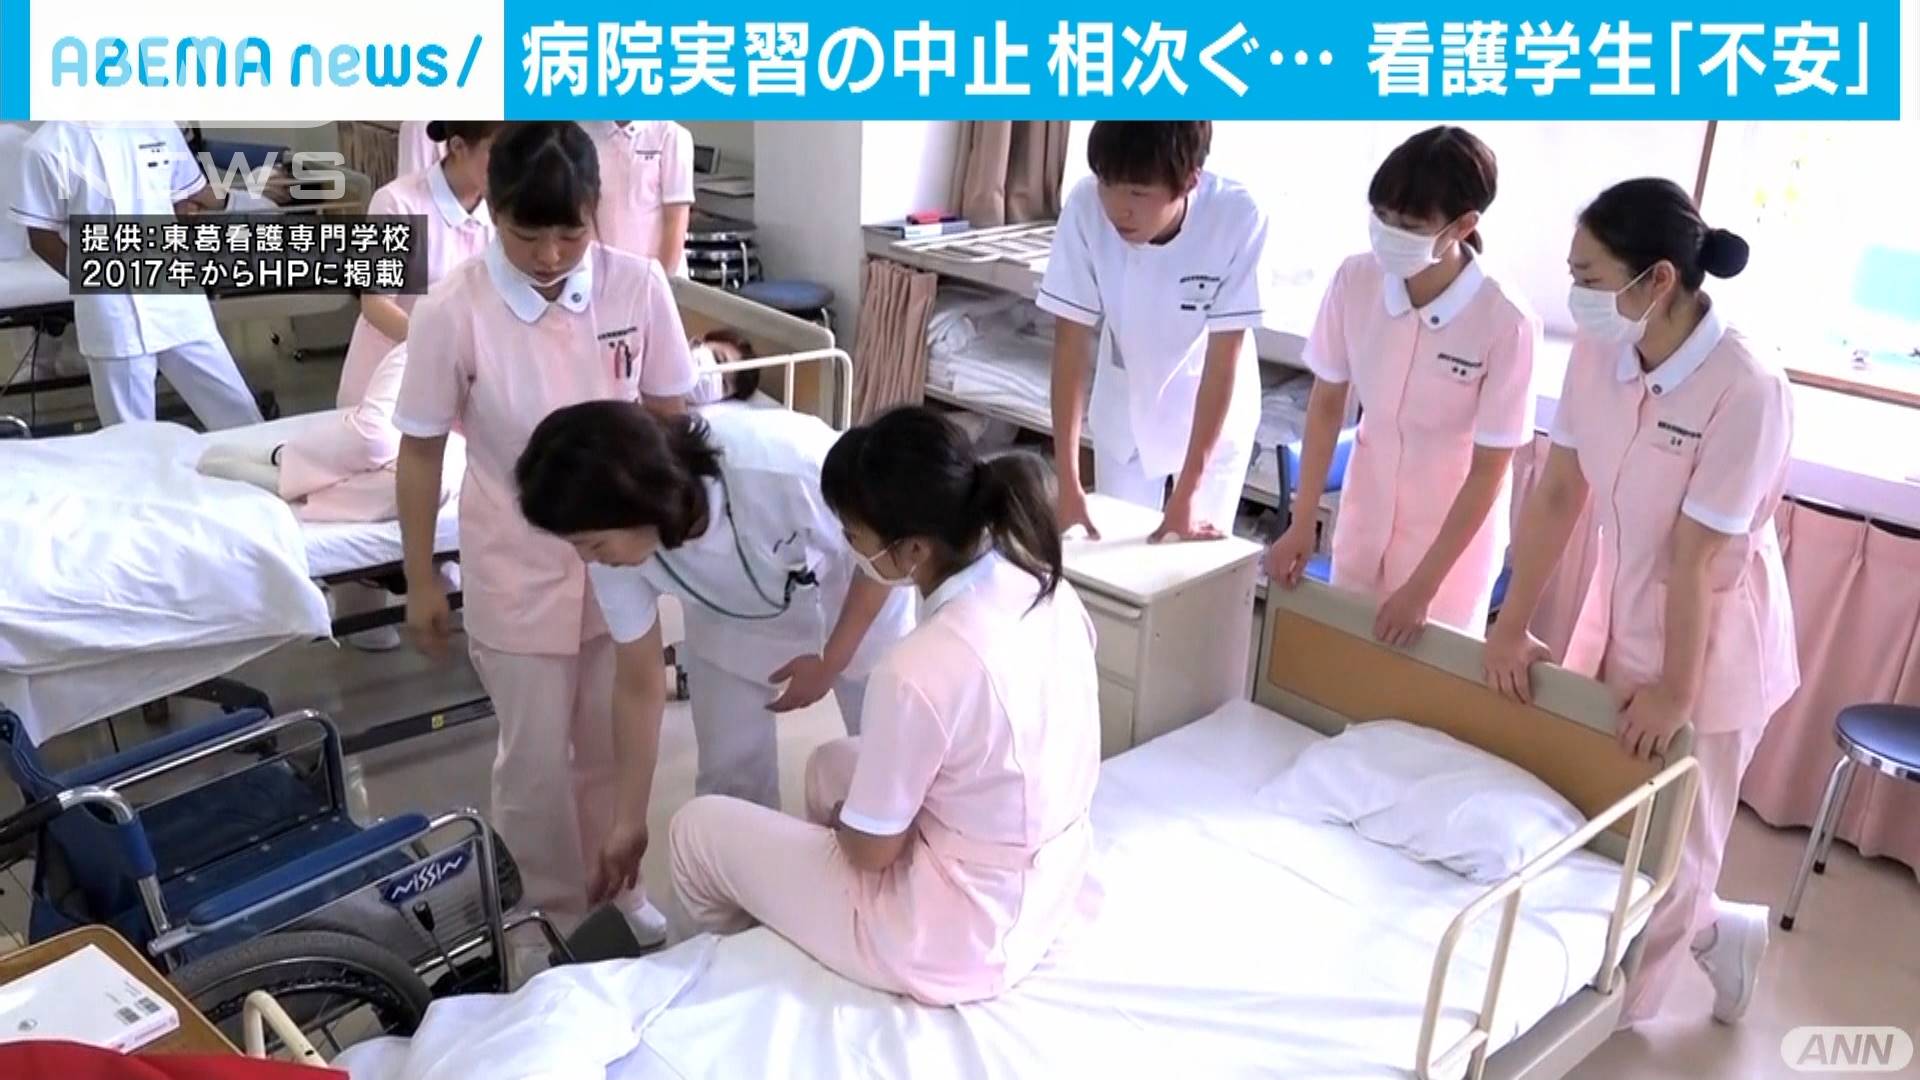 看護師の卵 すごく不安 病院実習が激減 テレ朝news テレビ朝日のニュースサイト